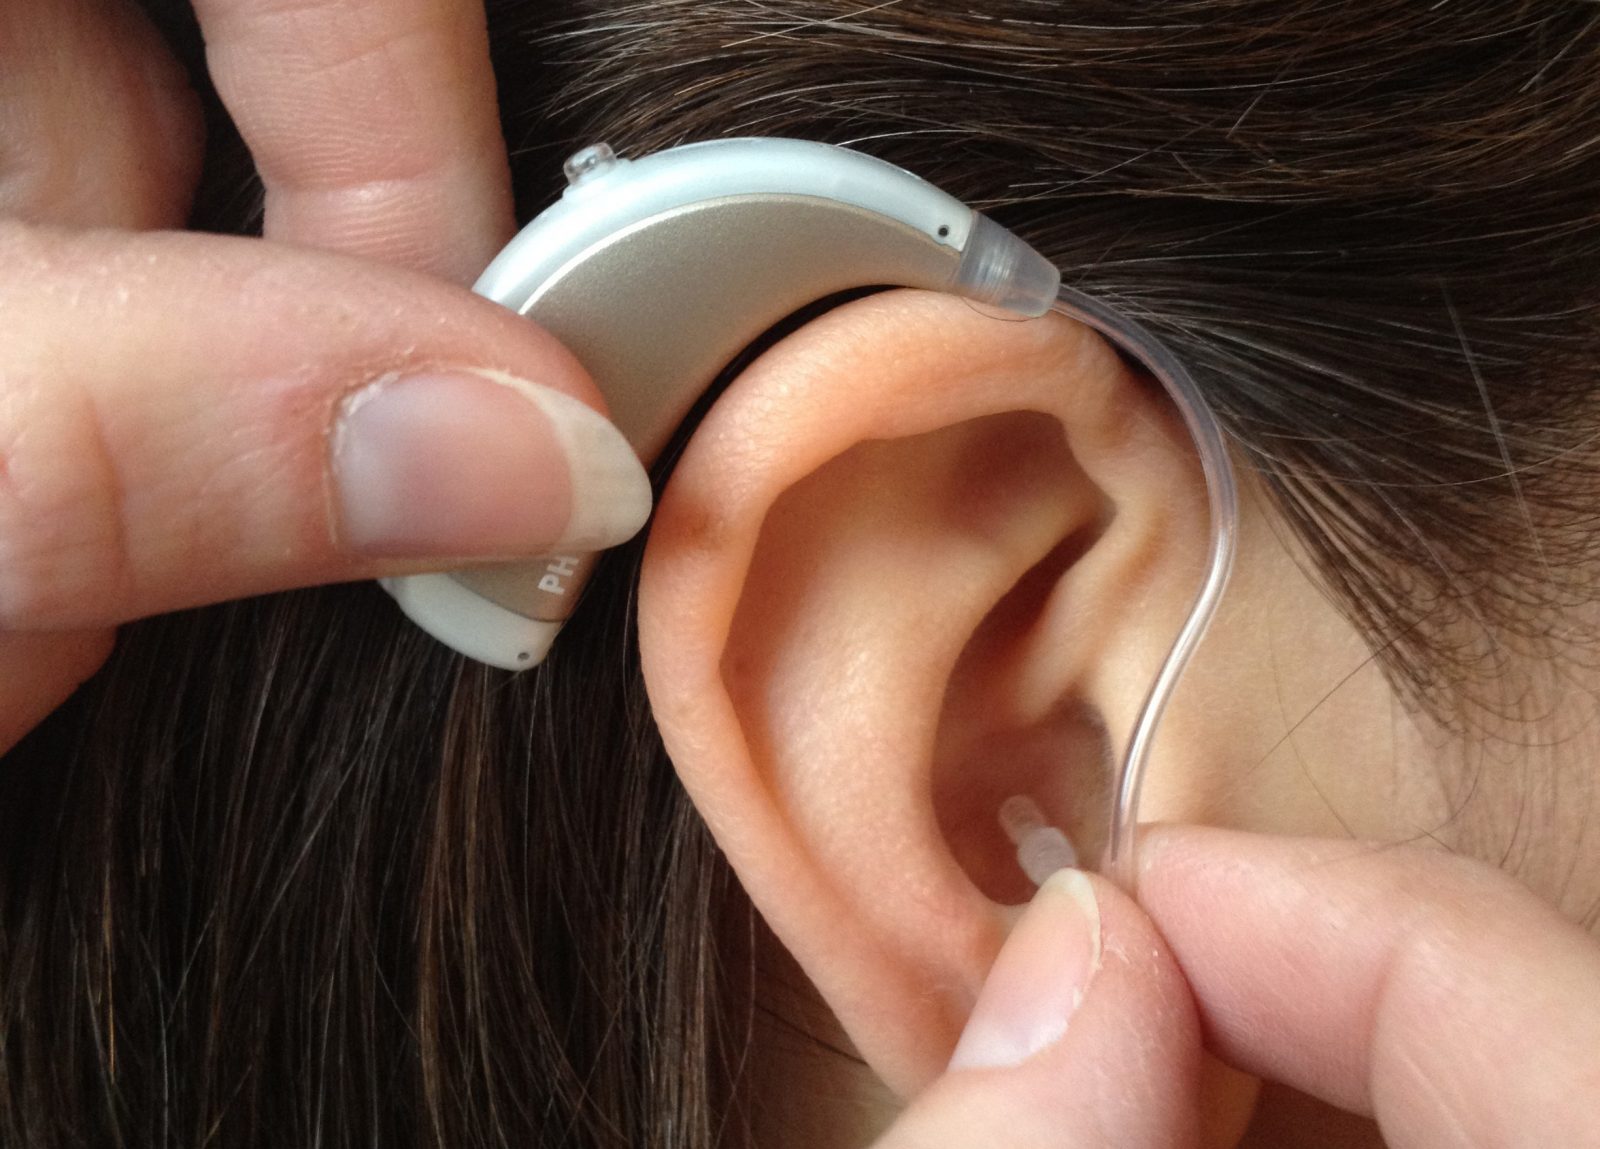 Fingrar sätter hörapparat på öra.